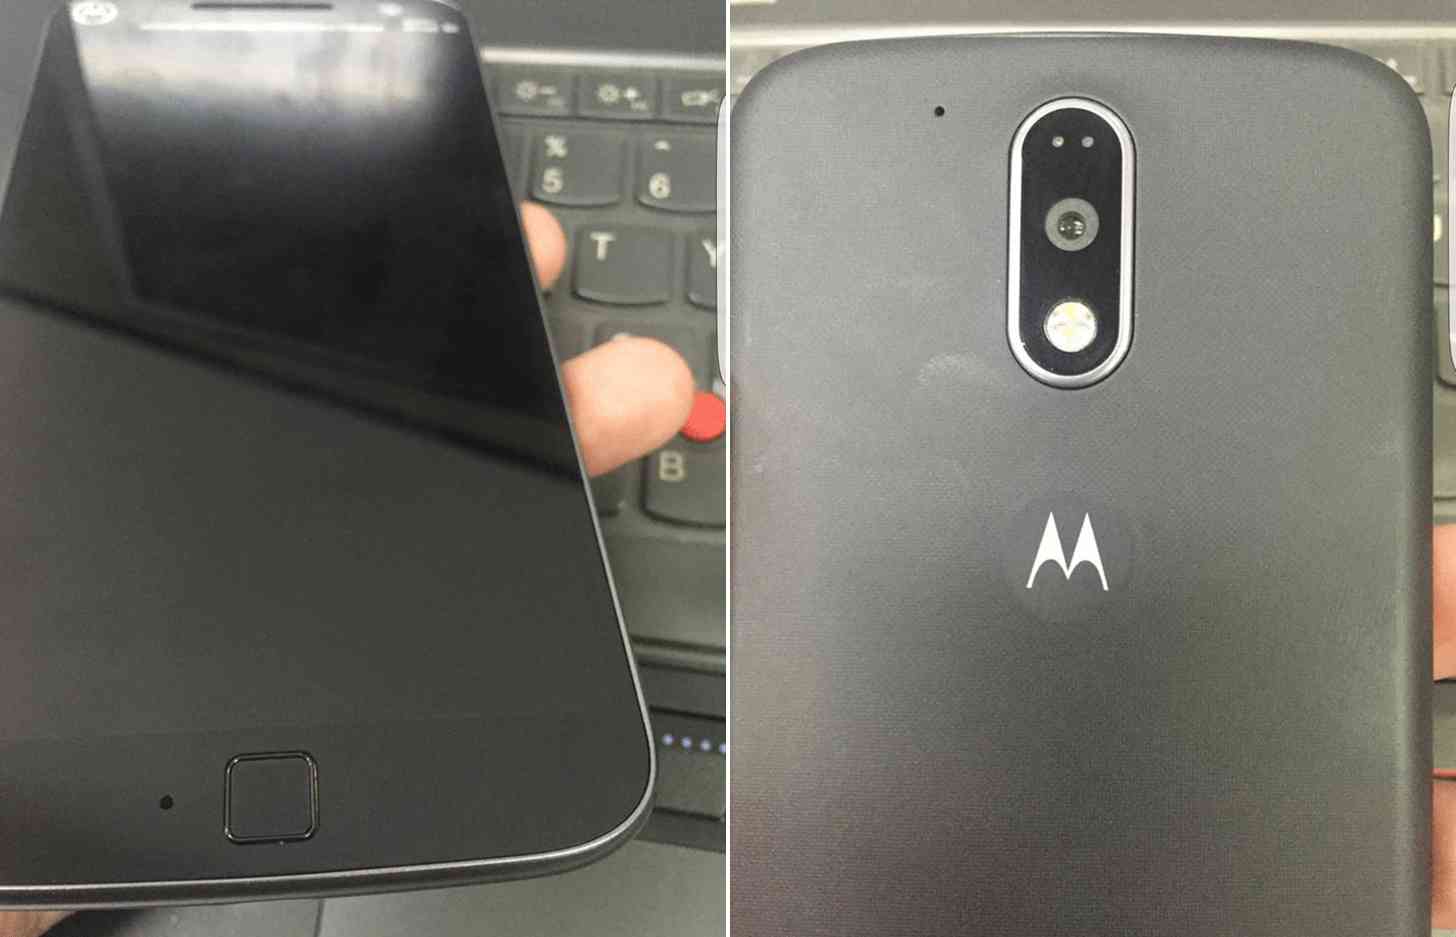 Motorola Moto G4 fingerprint reader photo leak